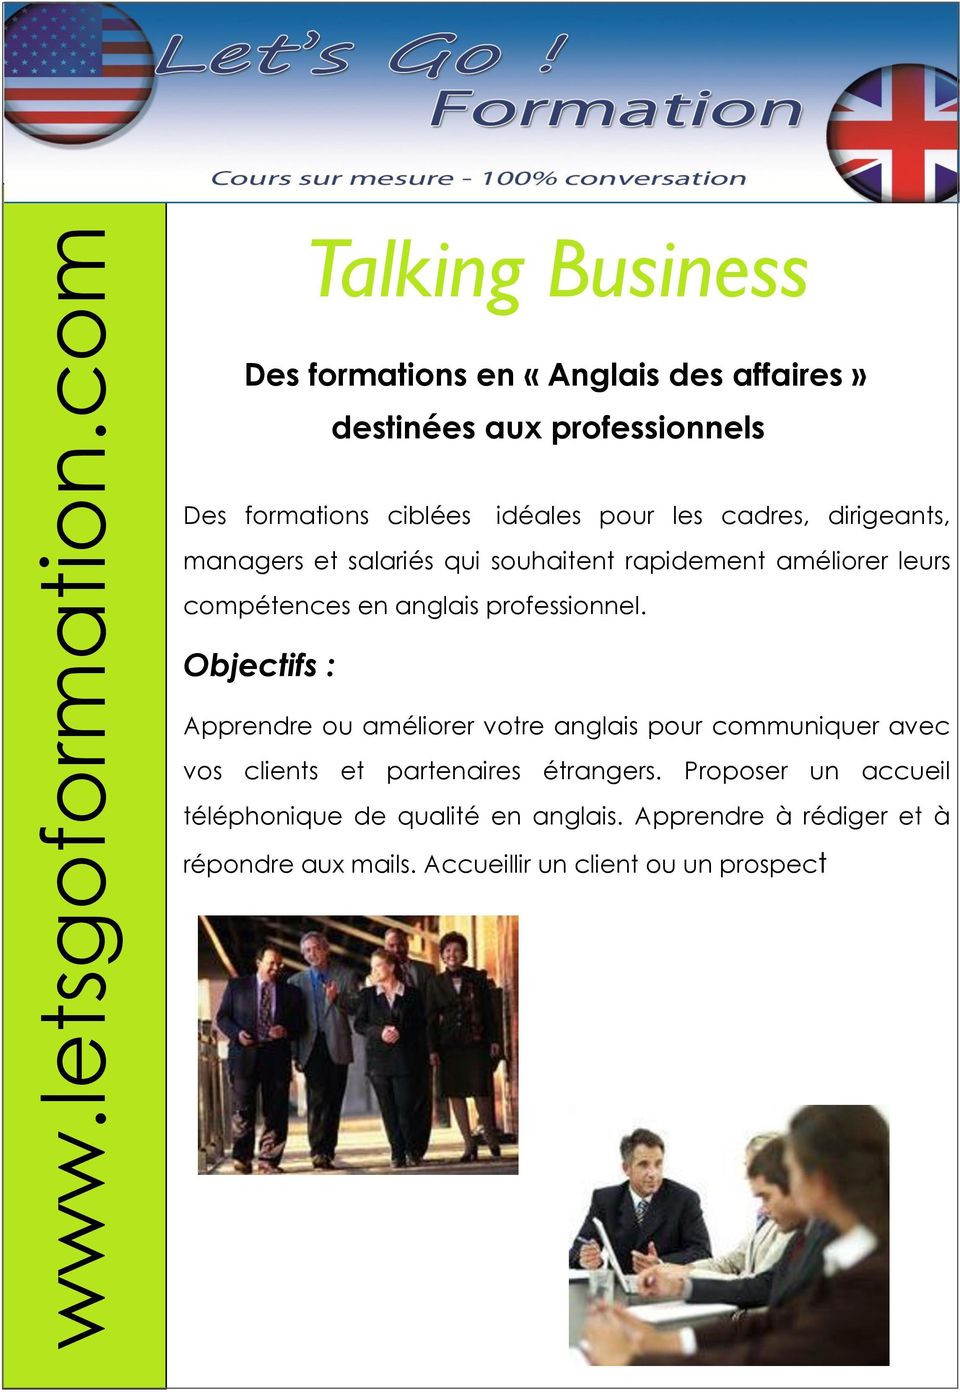 Objectifs : Apprendre ou améliorer votre anglais pour communiquer avec vos clients et partenaires étrangers.